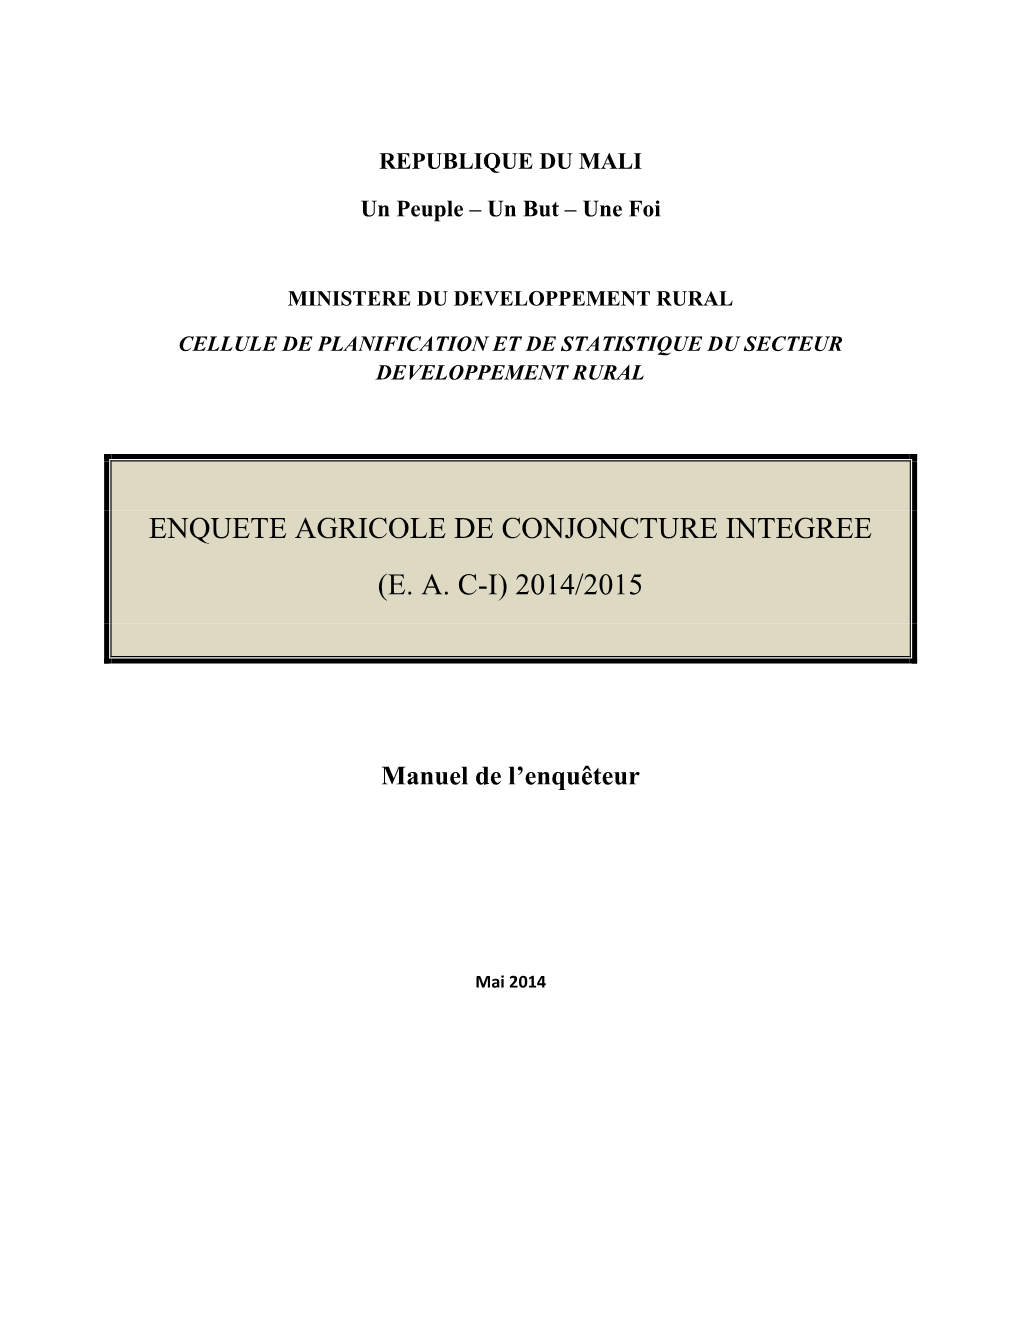 Enquete Agricole De Conjoncture Integree (E. A. C-I) 2014/2015